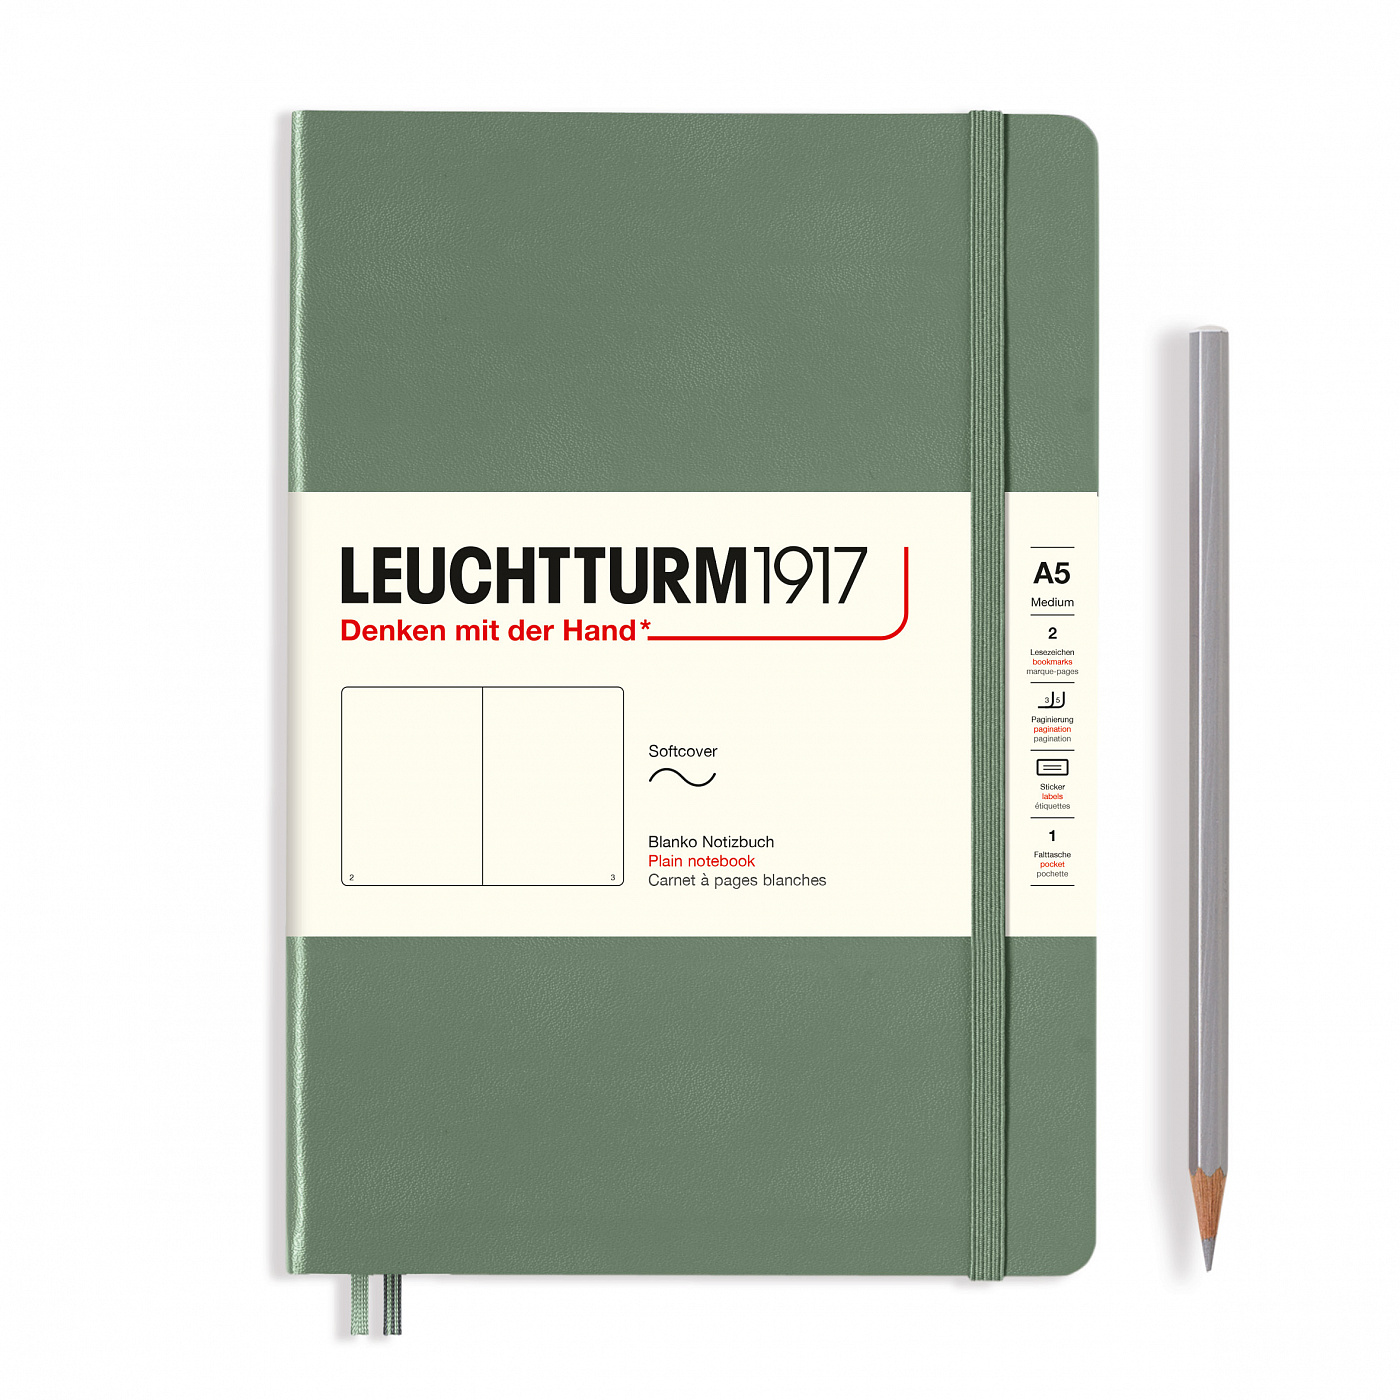  - Блокнот Leuchtturm1917 Smooth Colours A5 (14. 5x21см. ) 80г/м2 - 123 стр. нелинованная, мягкый обложка, цвет: оливковый